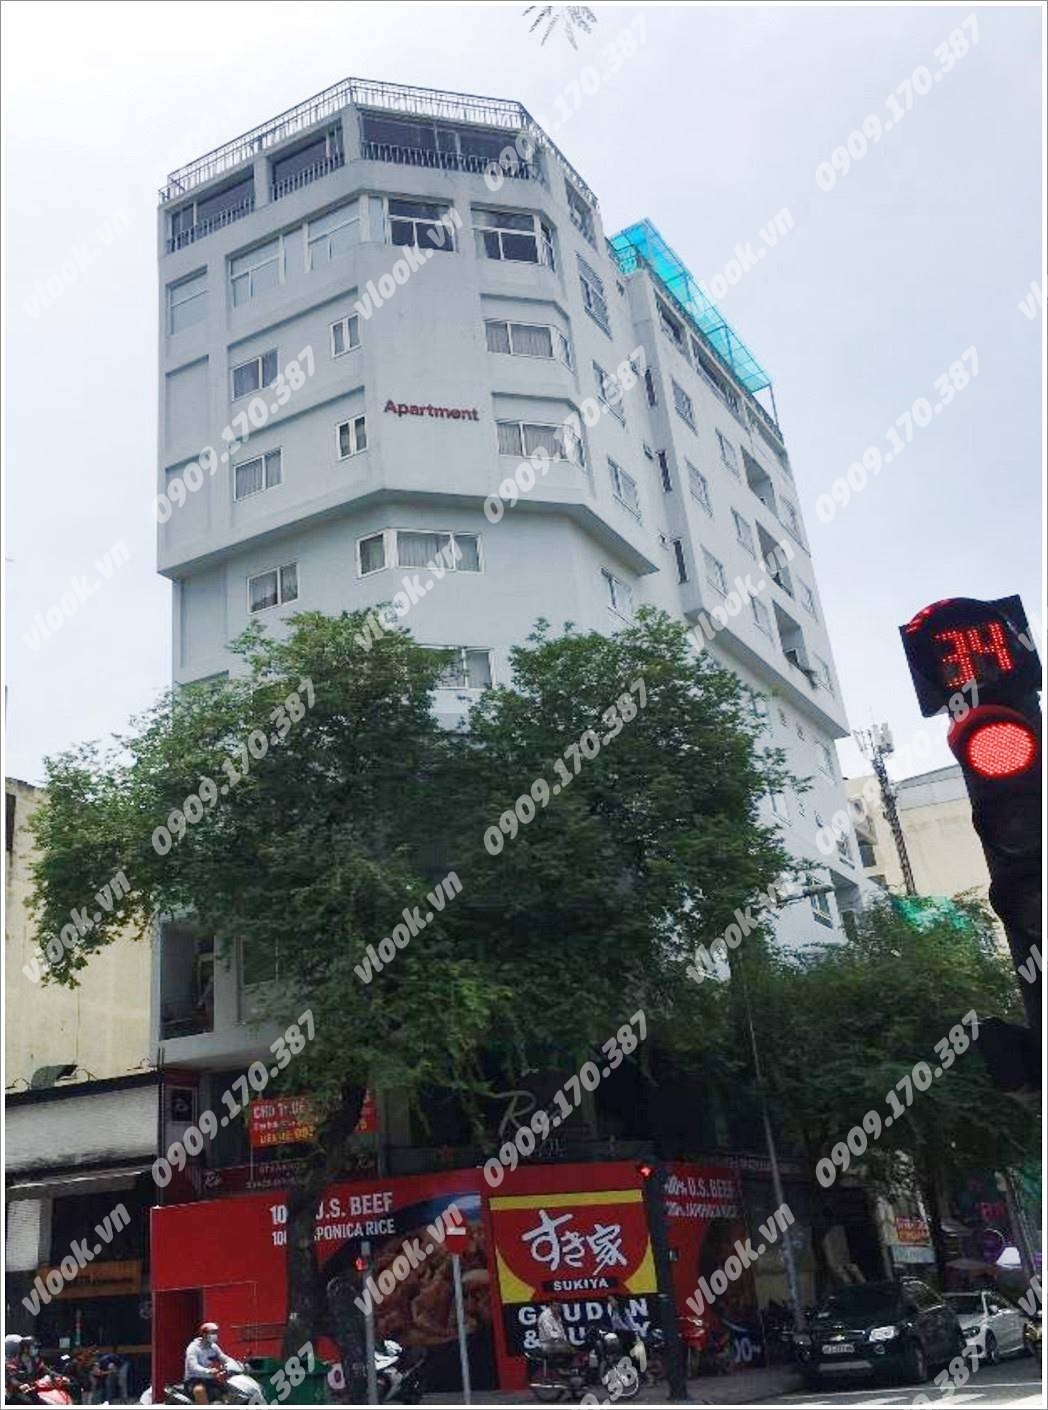 Cao ốc cho thuê văn phòng 10AB Building, Thái Văn Lung, Quận 1, TPHCM - vlook.vn